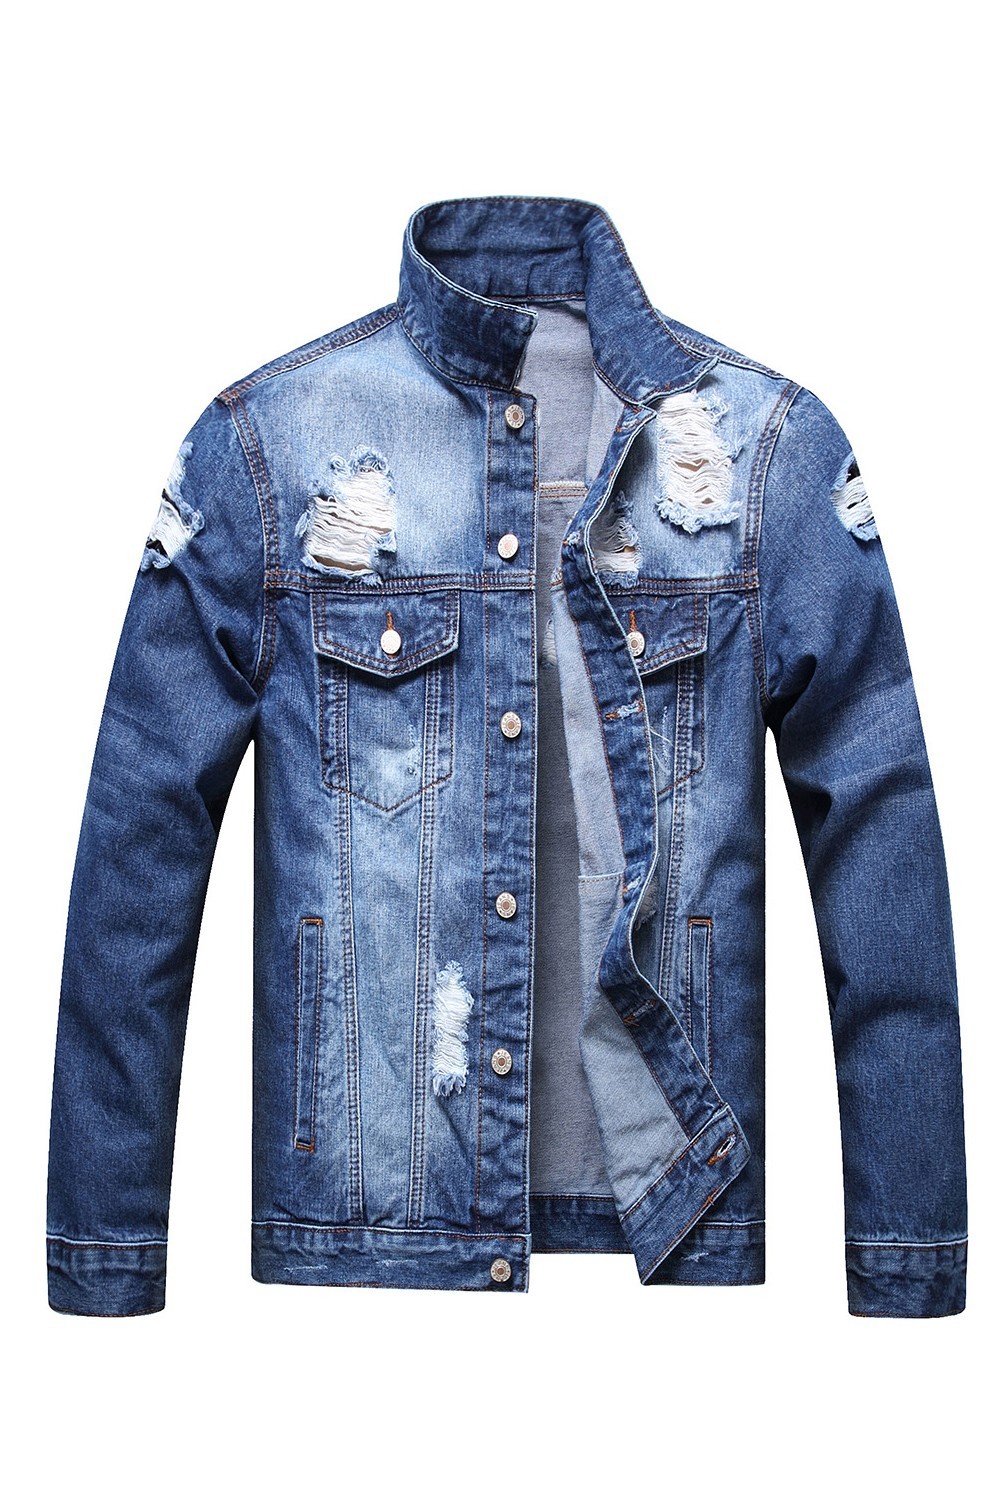 US$15.51 Men's Dark Blue Ripped Denim Jacket Wholesale - www.dear-lover.com